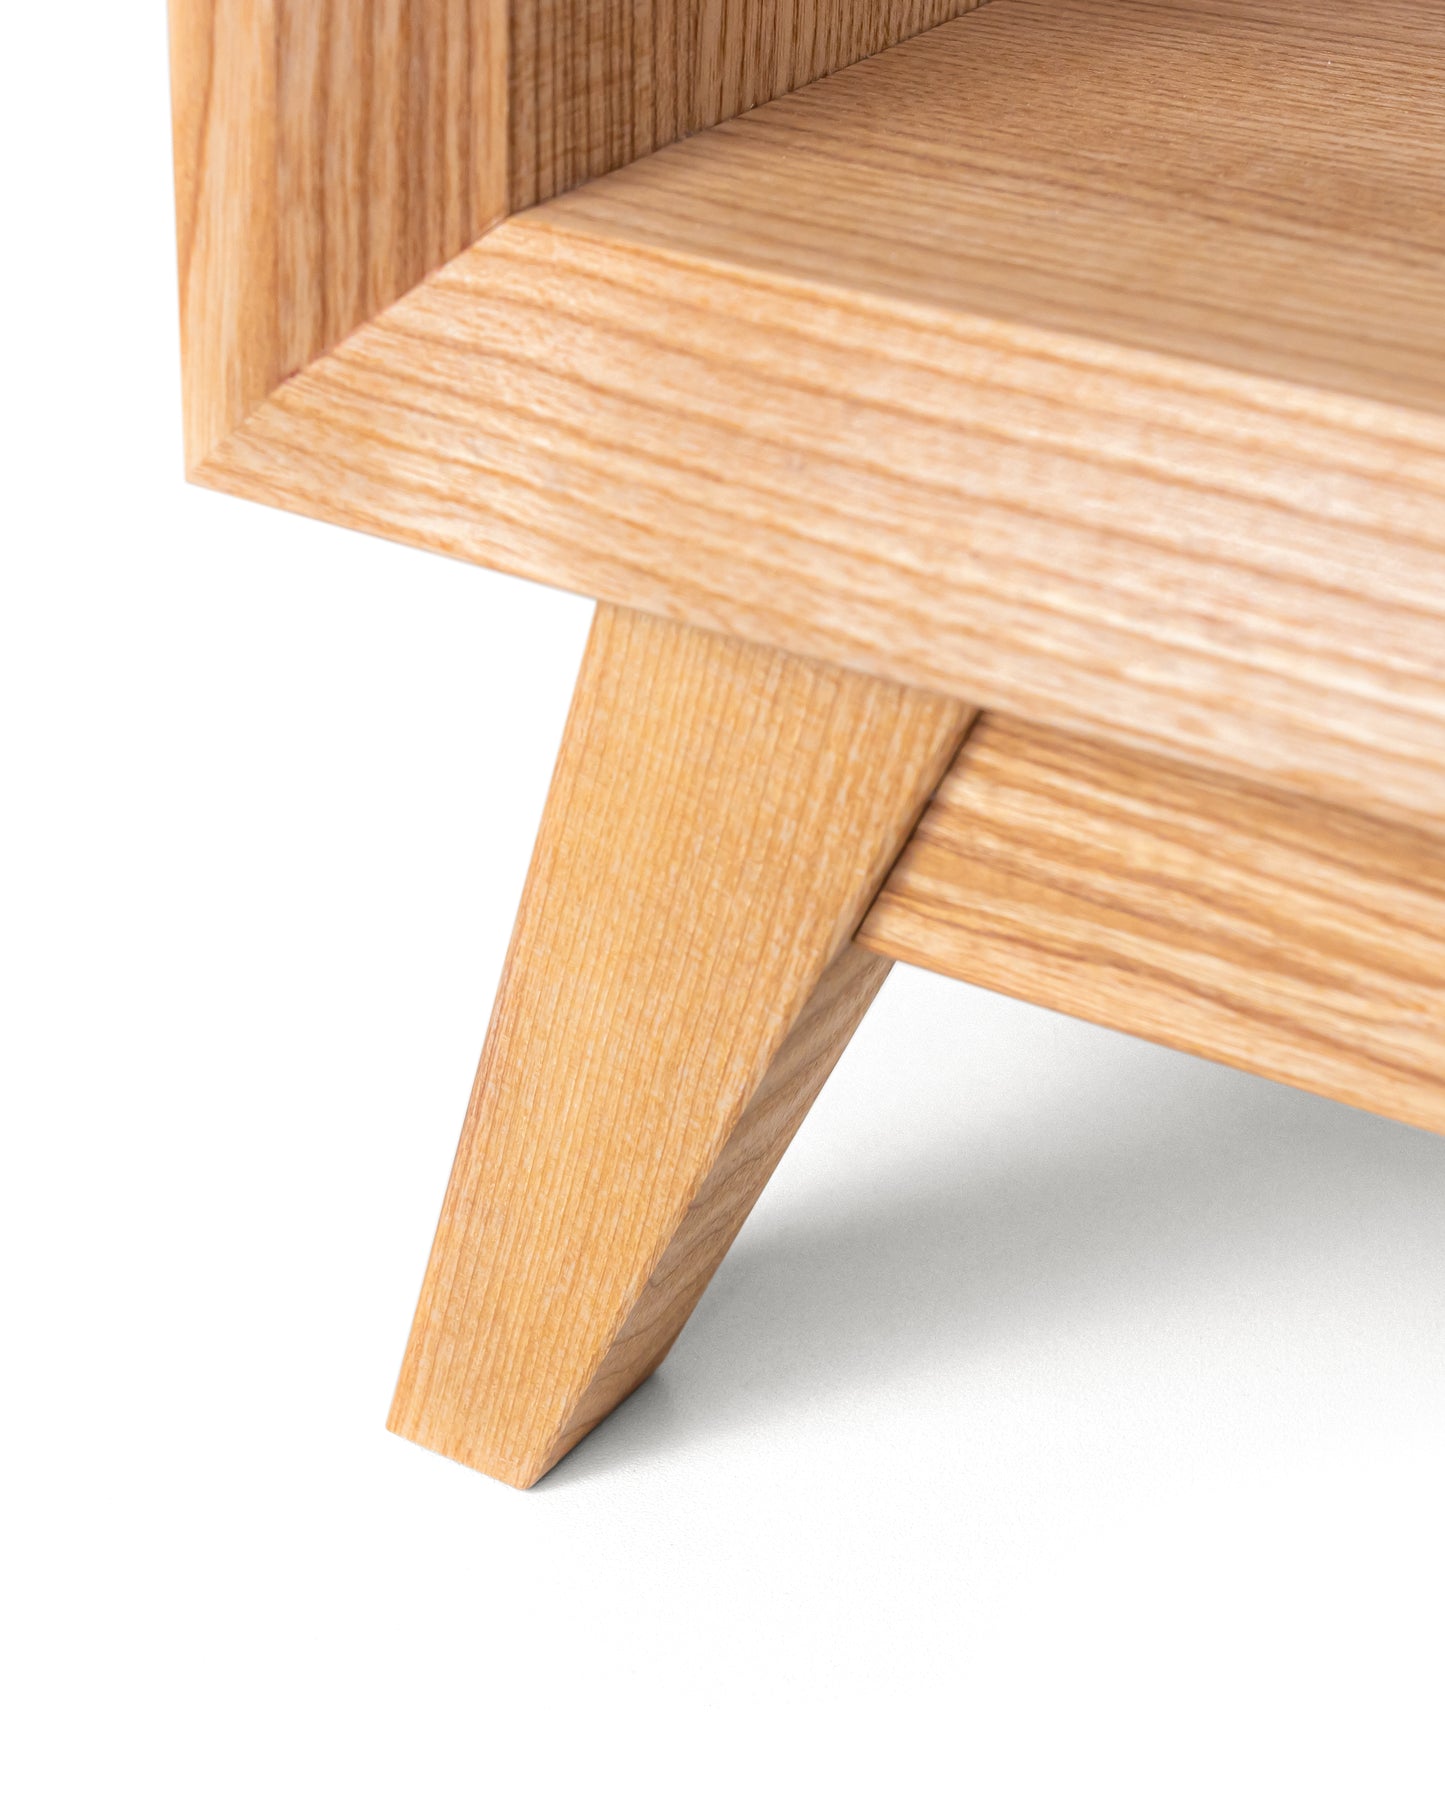 Lowboard in Esche:Massivholz - Qualität, die sich auszahlt:Mit diesem Lowboard aus Massivholz investieren Sie in ein hochwertiges Möbelstück, dass über die Jahre hinweg robust und widerstandfähig bleibt.